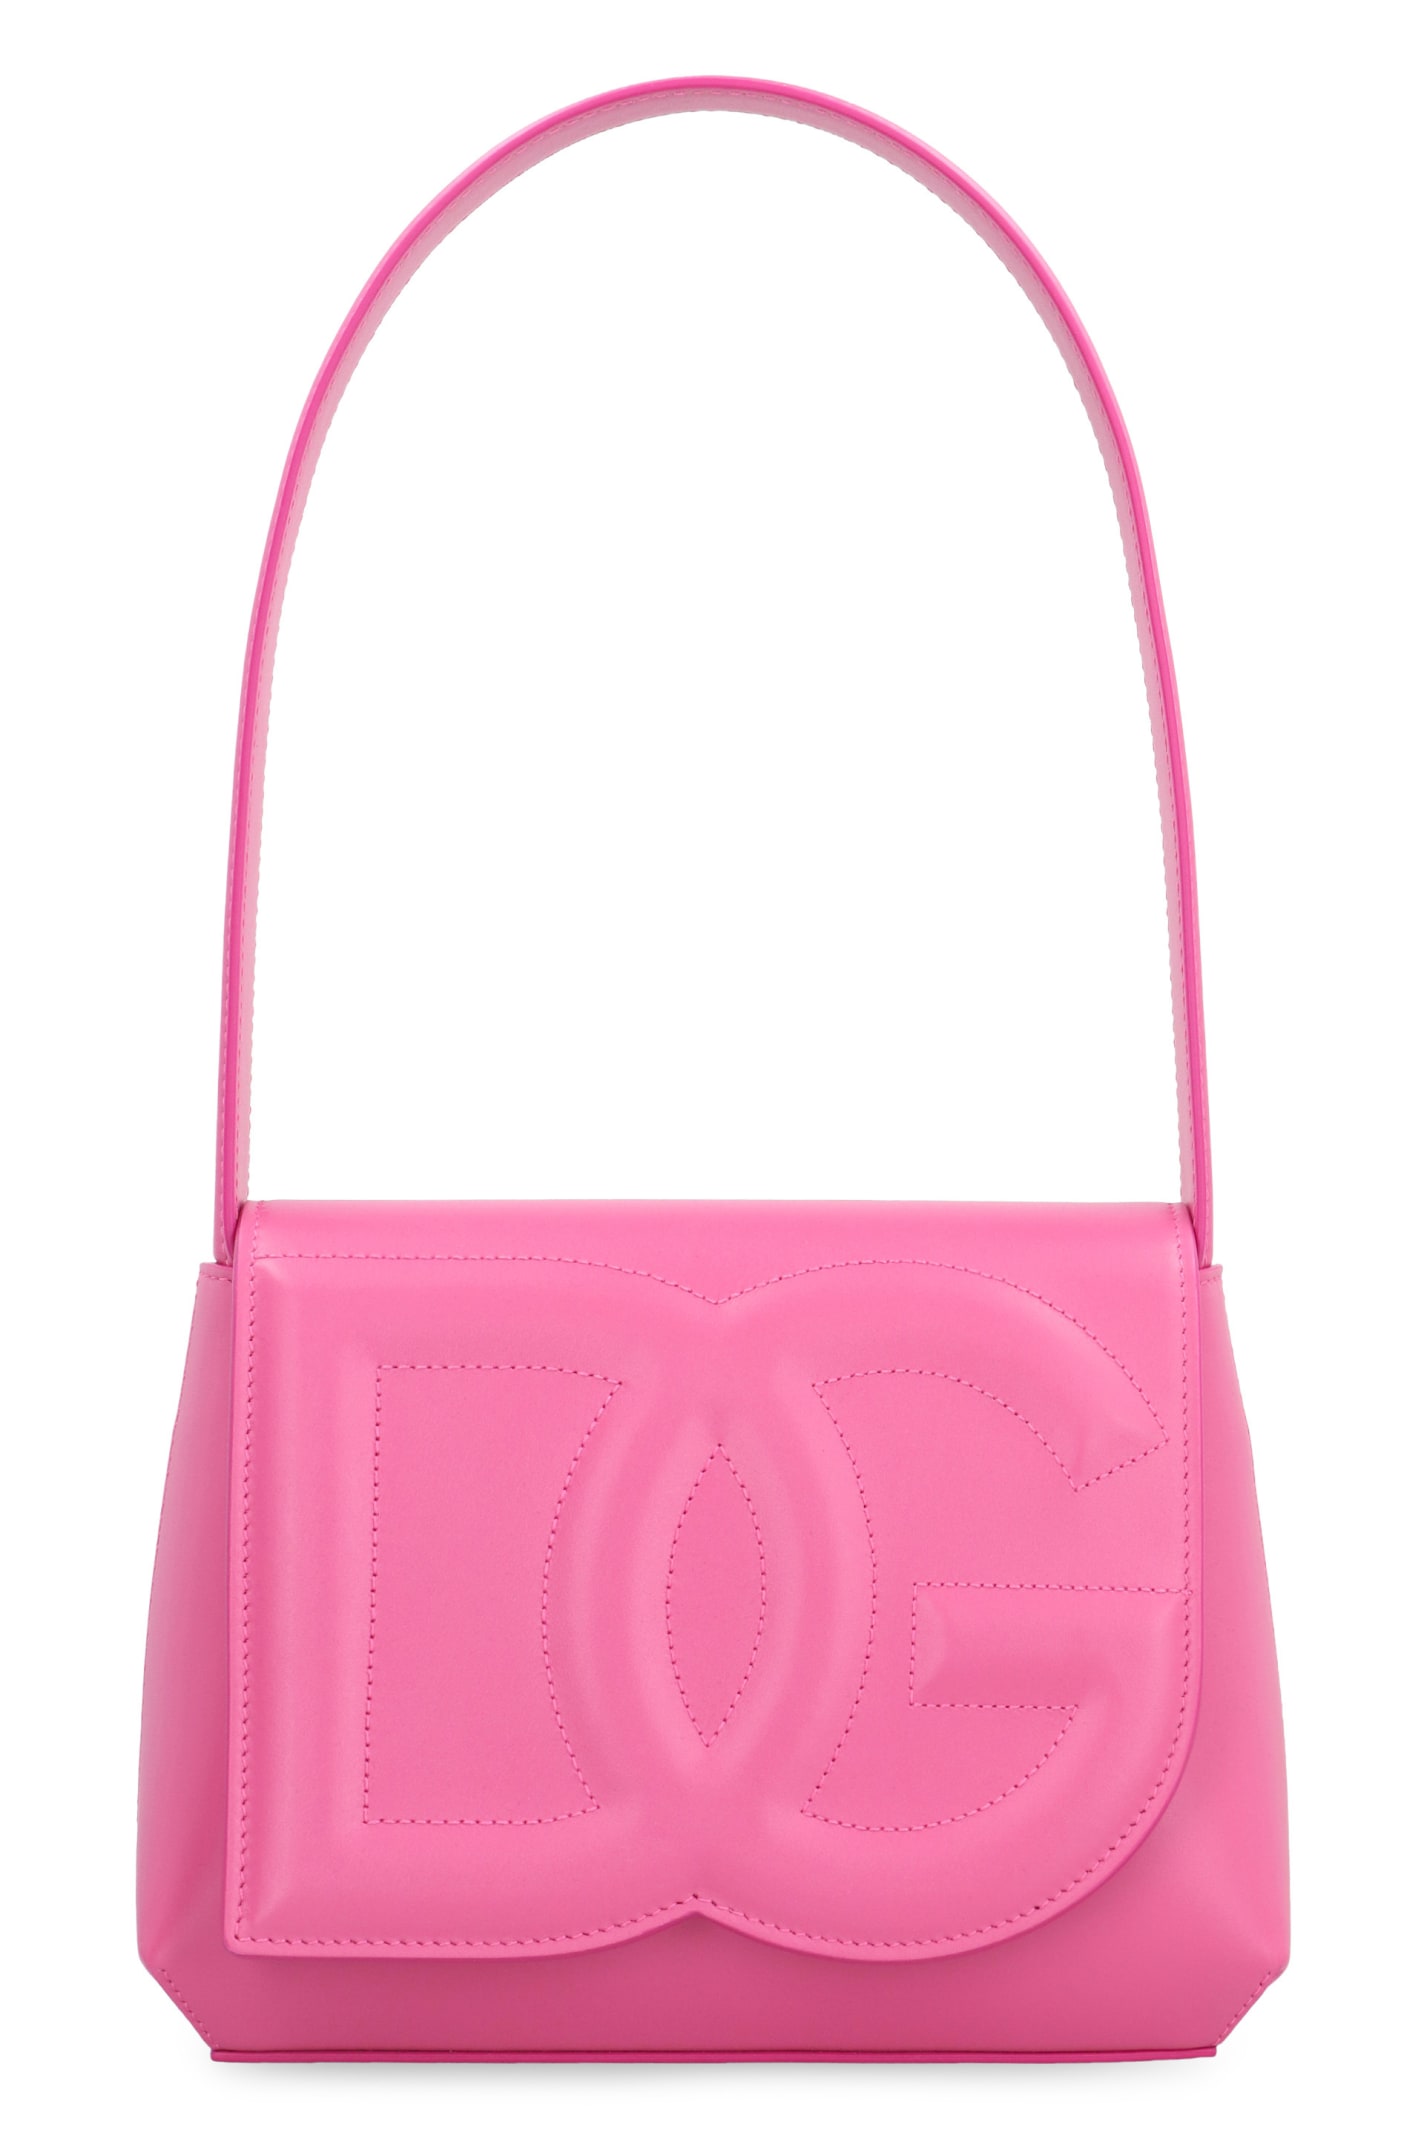 Dolce & Gabbana Dg Logo Leather Shoulder Bag In Pink